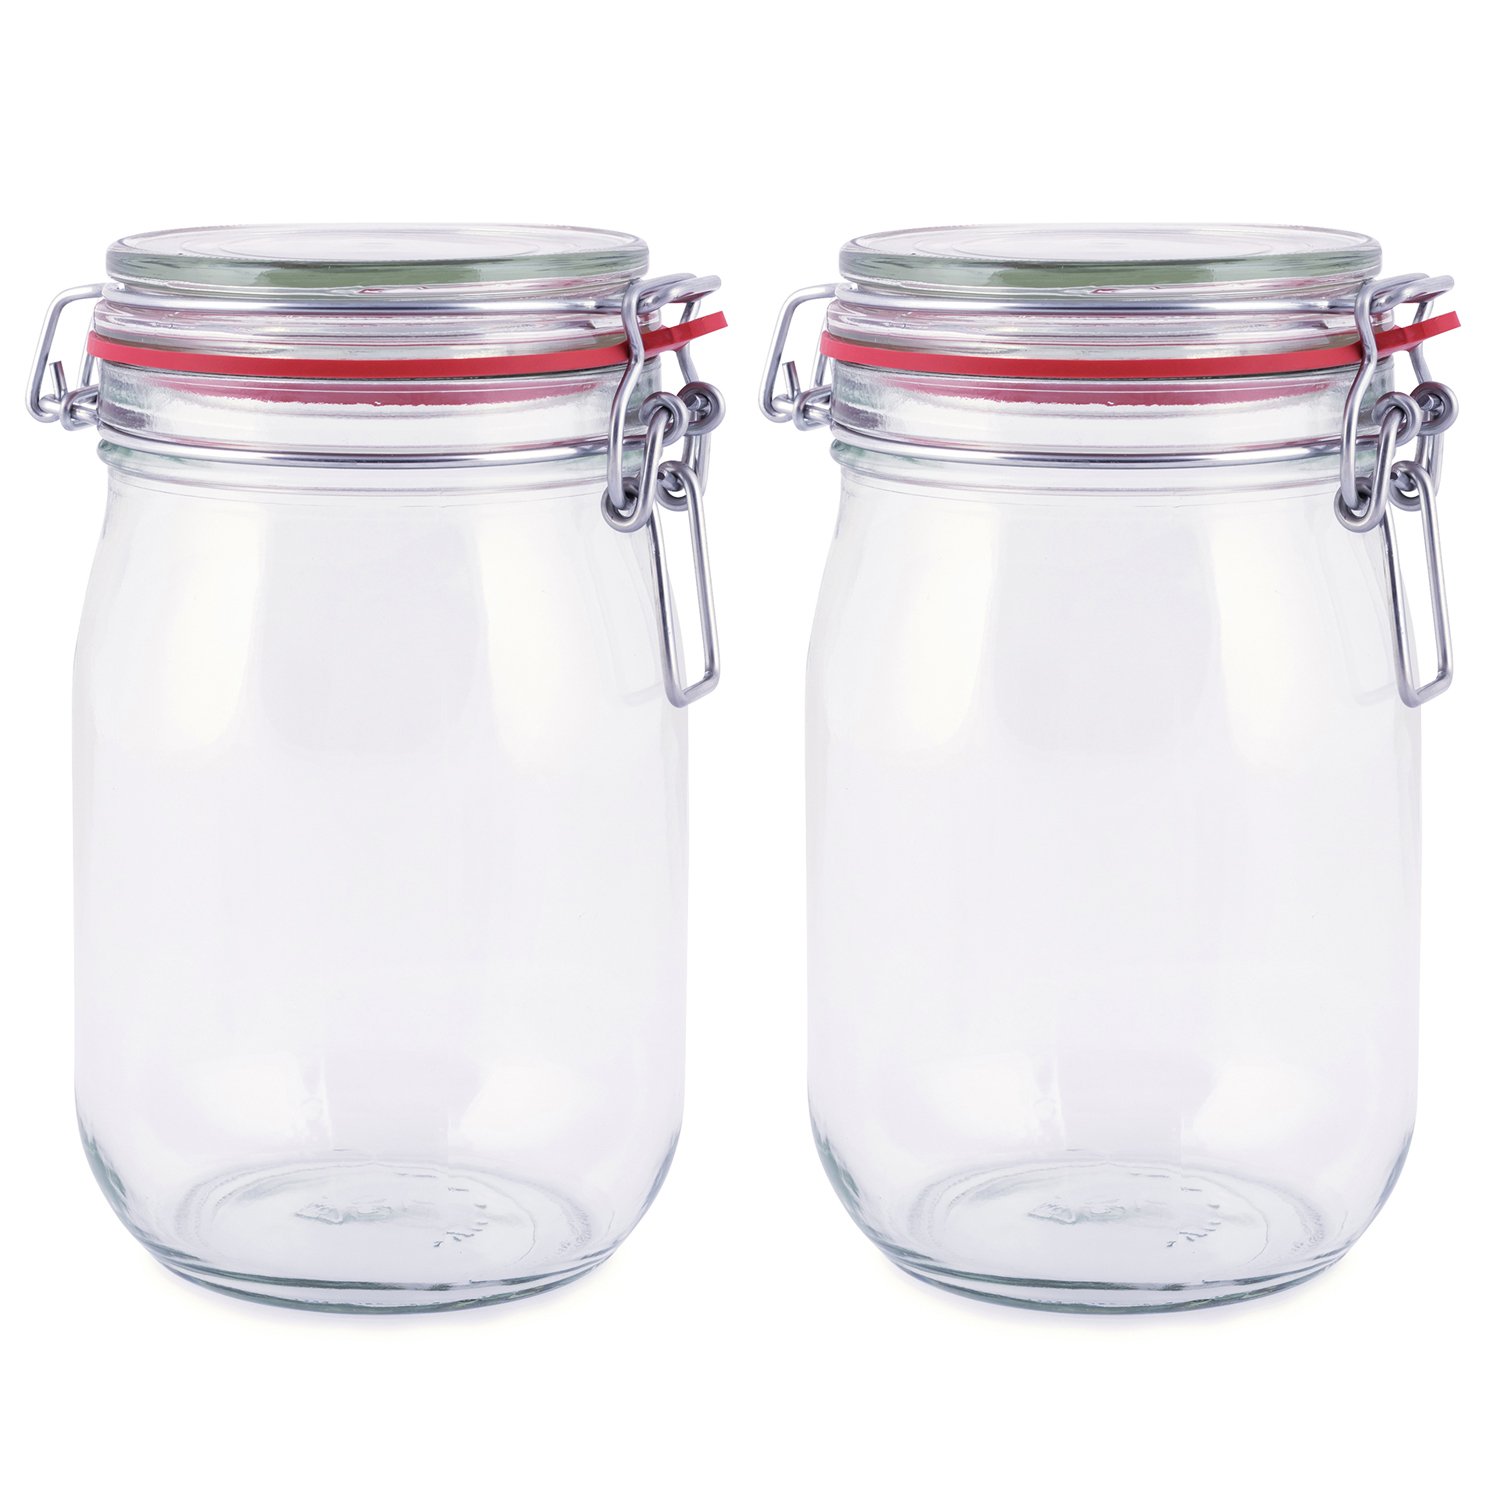 pajoma Drahtbügelglas 4er-Set | 1000 ml Fassungsvermögen inkl. Gummidichtung | Einmachglas Vorratsglas mit Drahtbügelverschluss - Premium Qualität